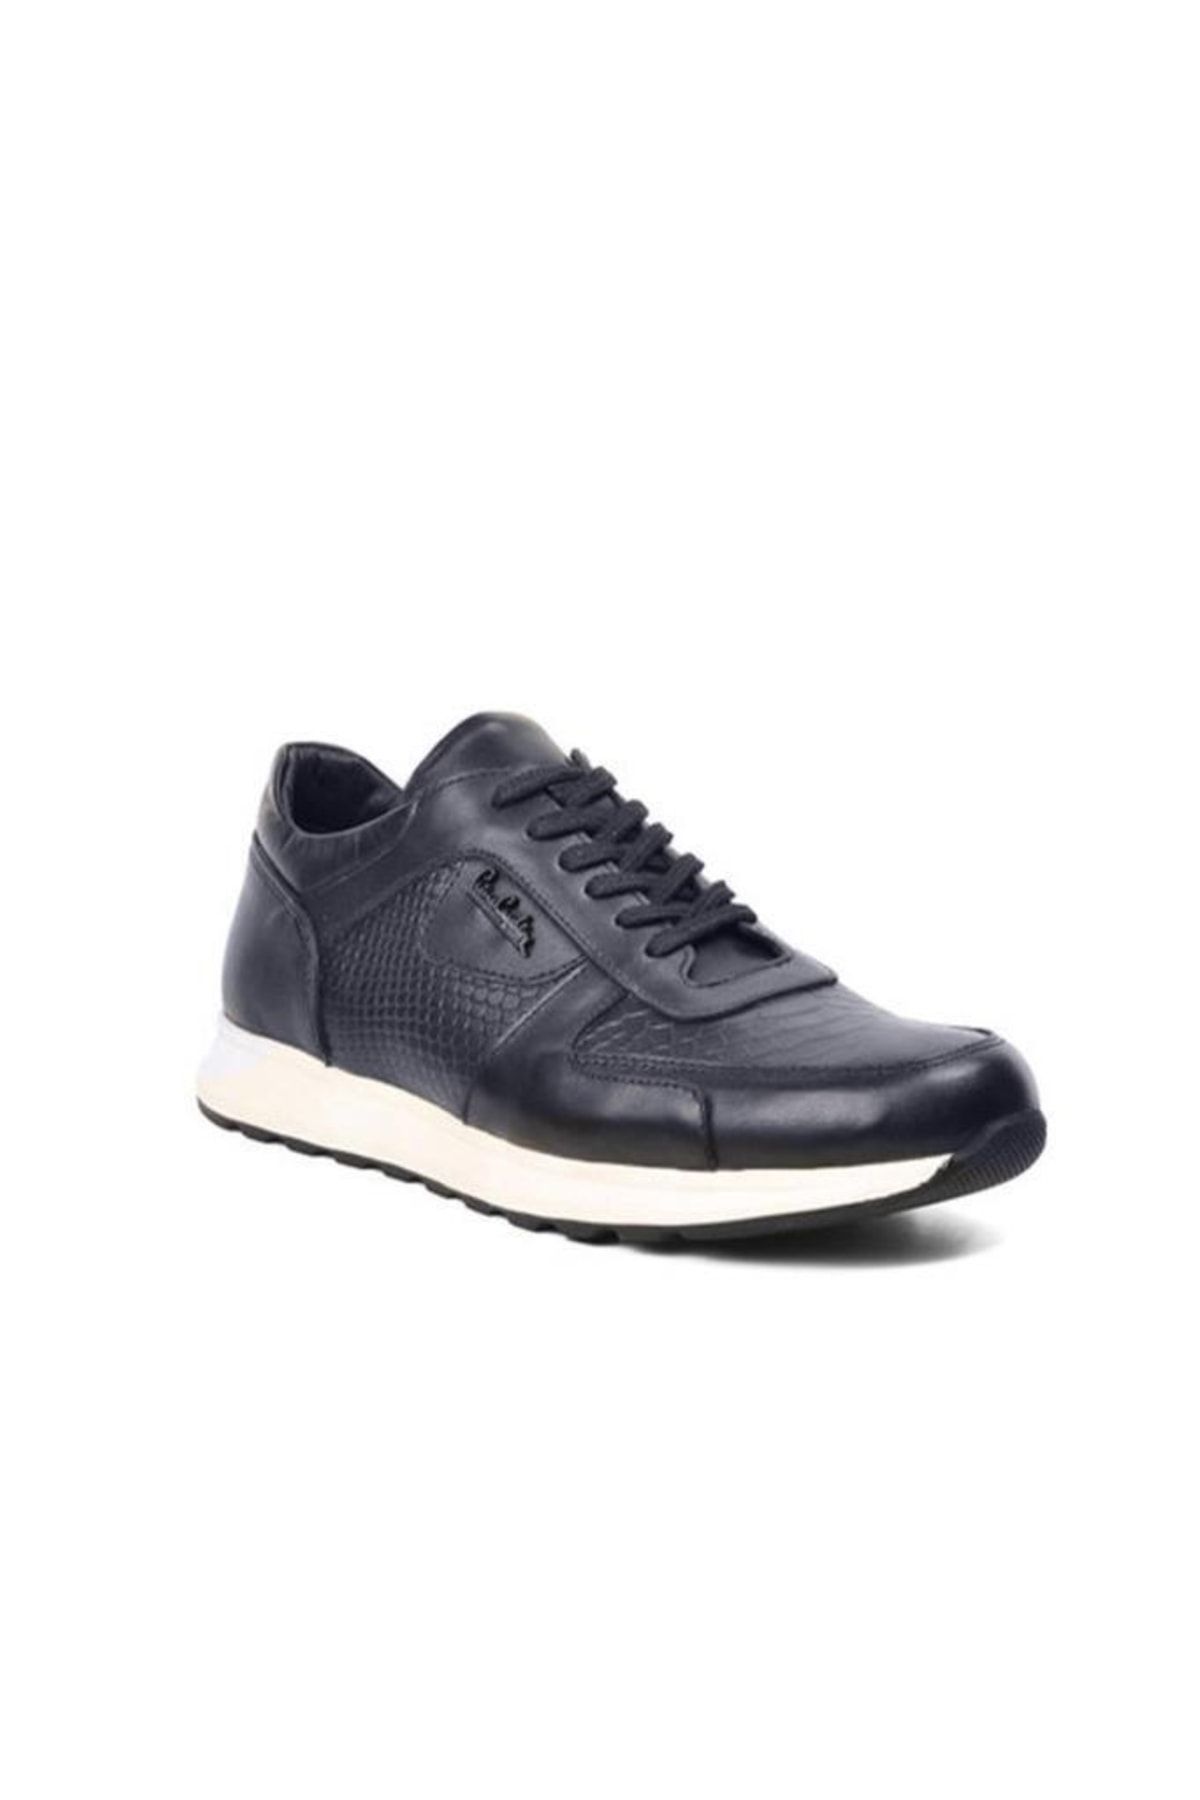 Pierre Cardin 27105 Sneakers Hakiki Deri Erkek Ayakkabı